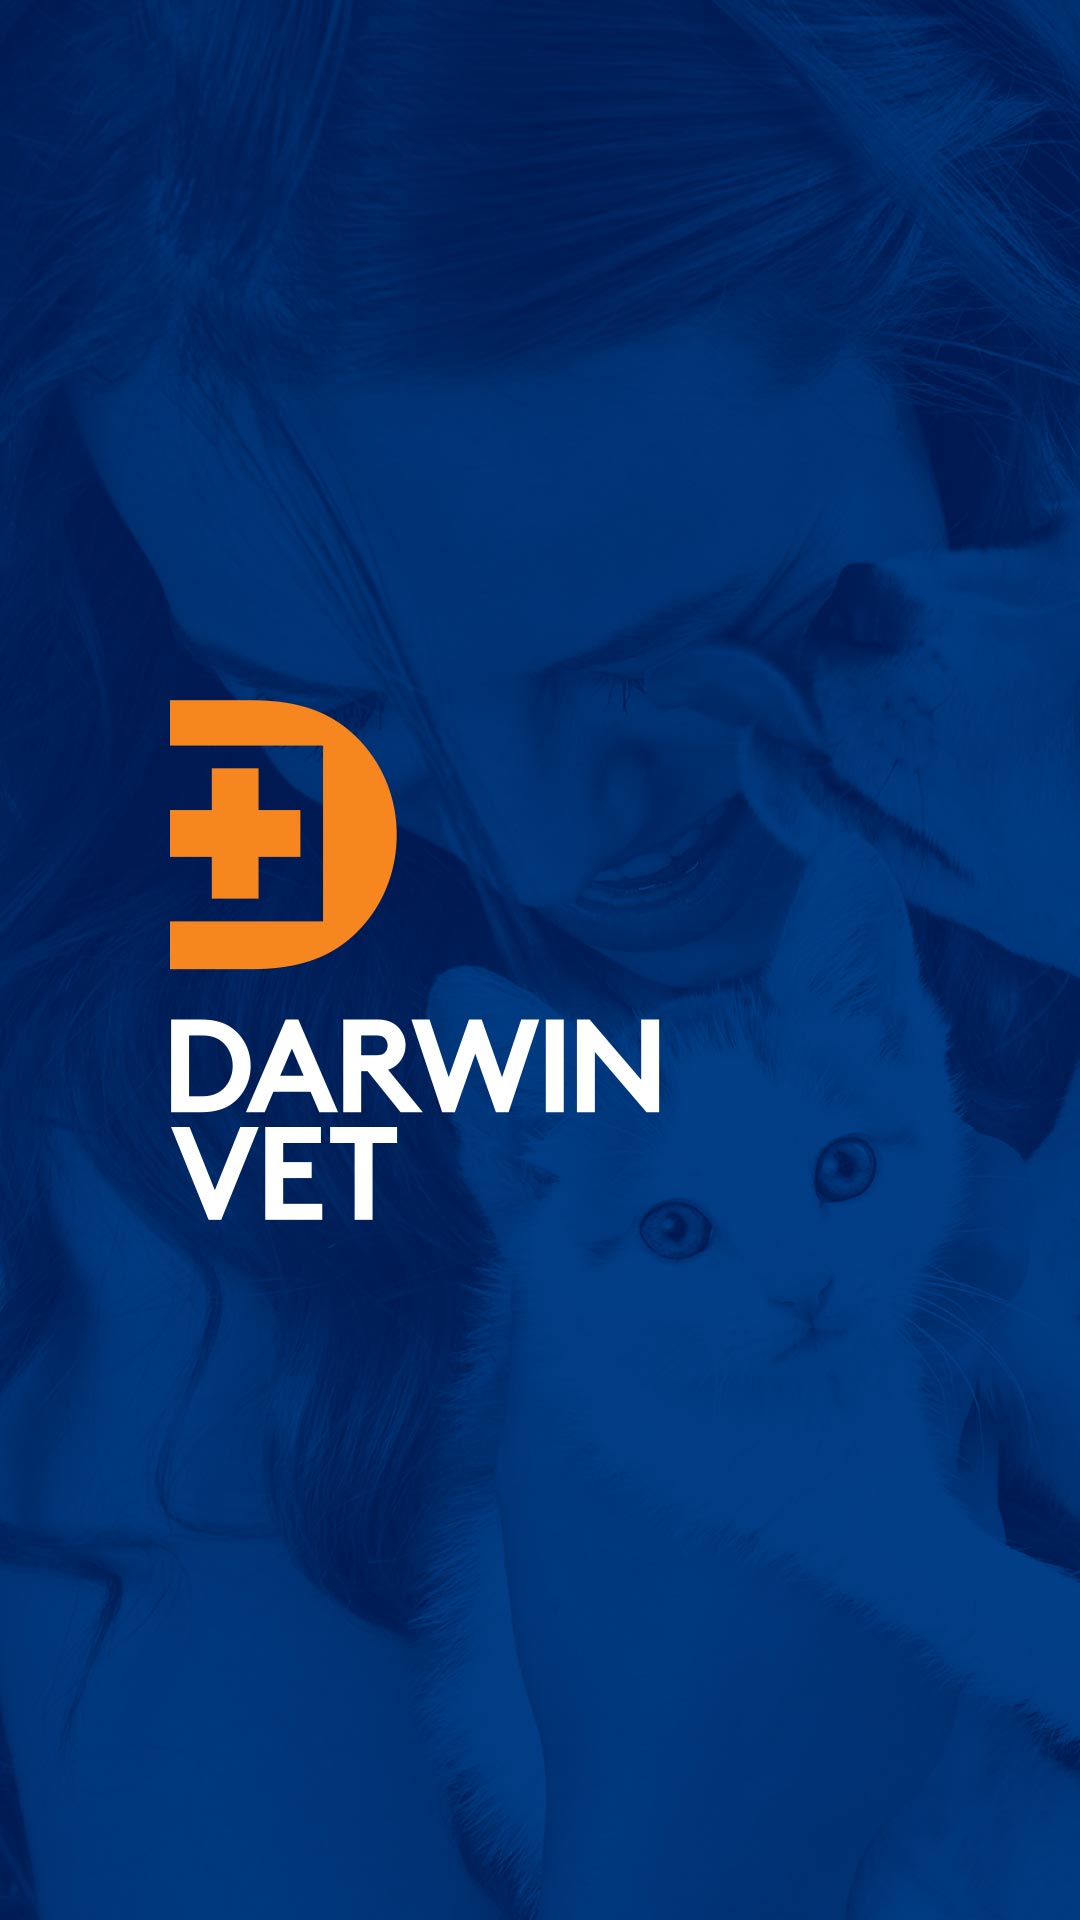 Darwin Vet Branding and Logo Design